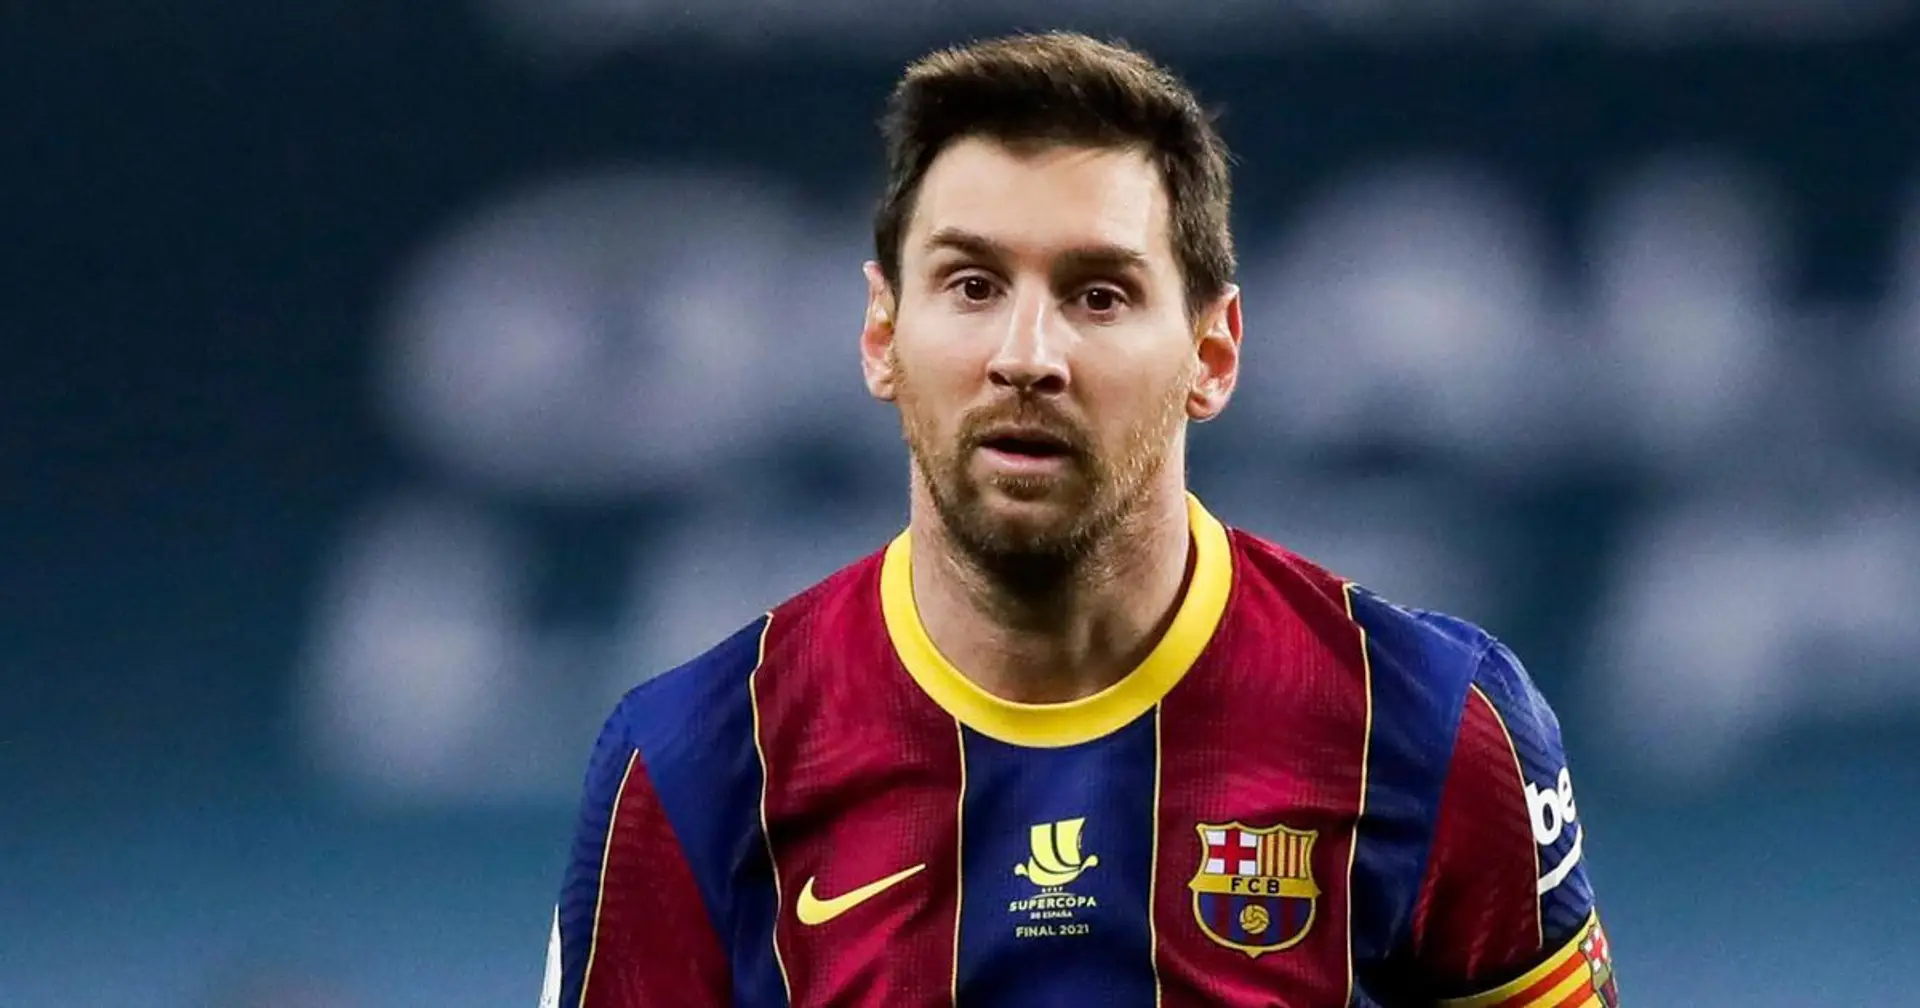 Révélé: Le classement de Leo Messi parmi les meilleurs joueurs de la saison 2020/21 de la Liga en terme de statistiques